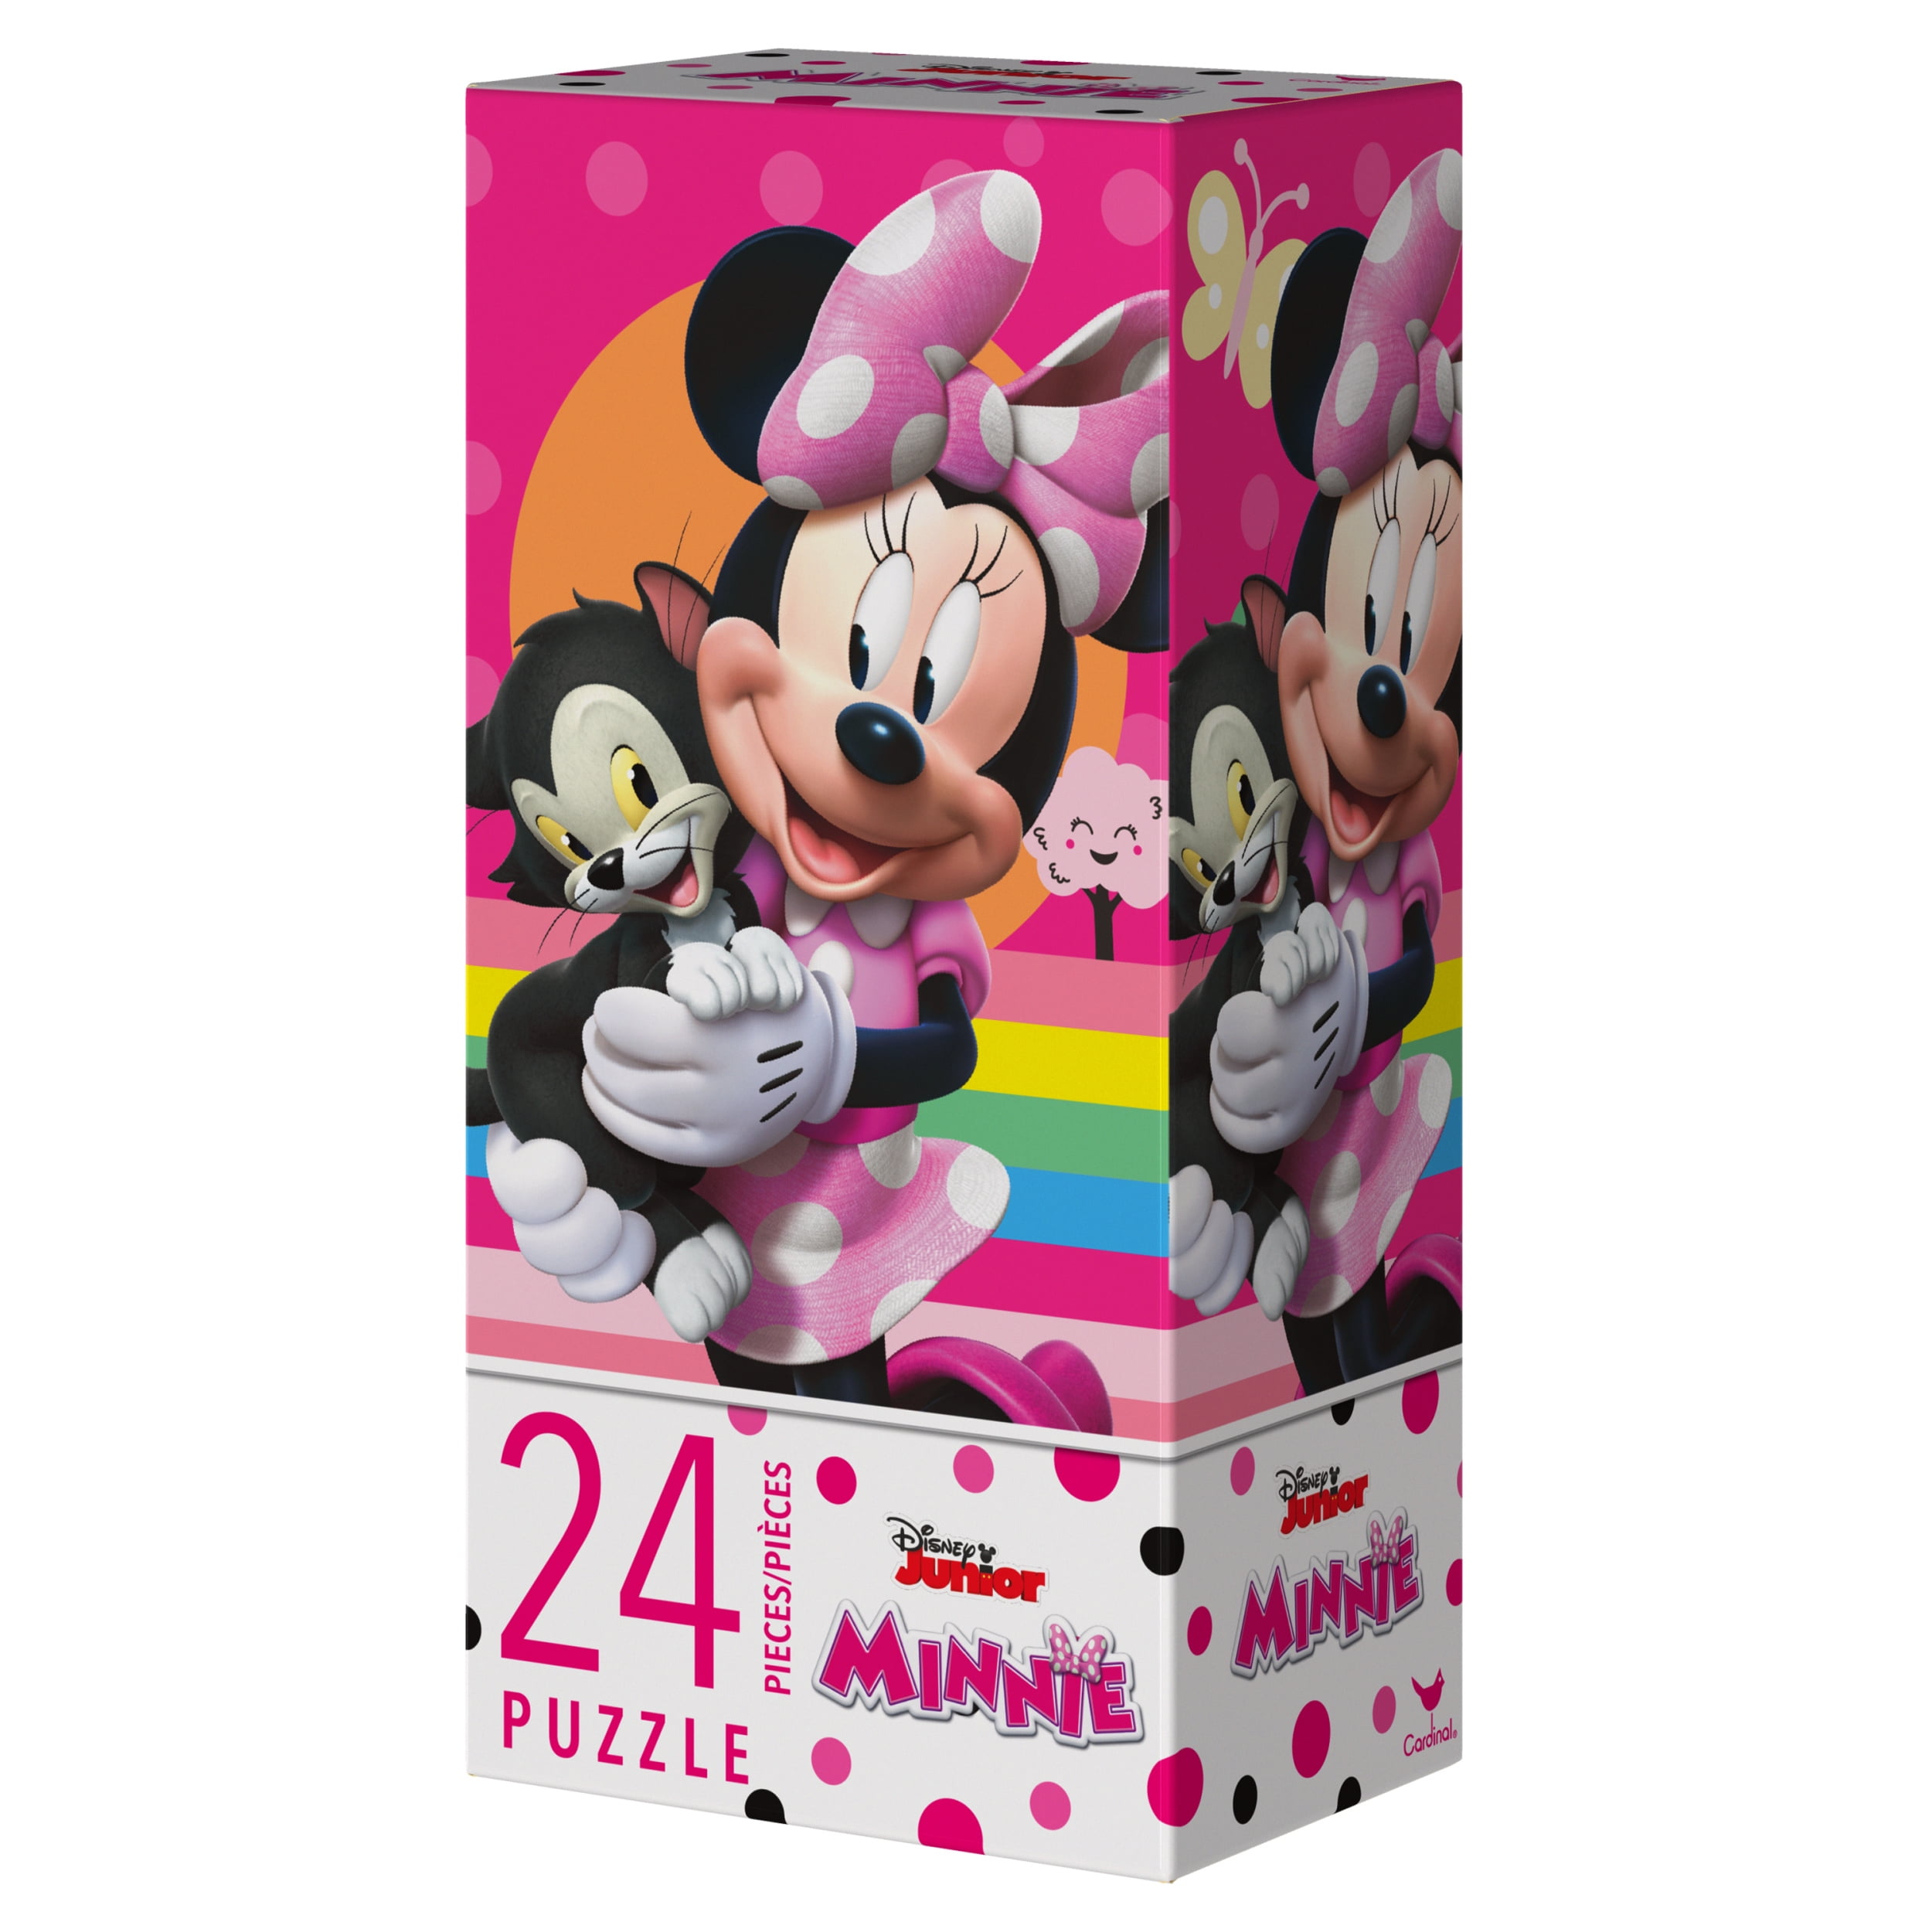 Minnie Mouse Puzzle Bag, 24-pc